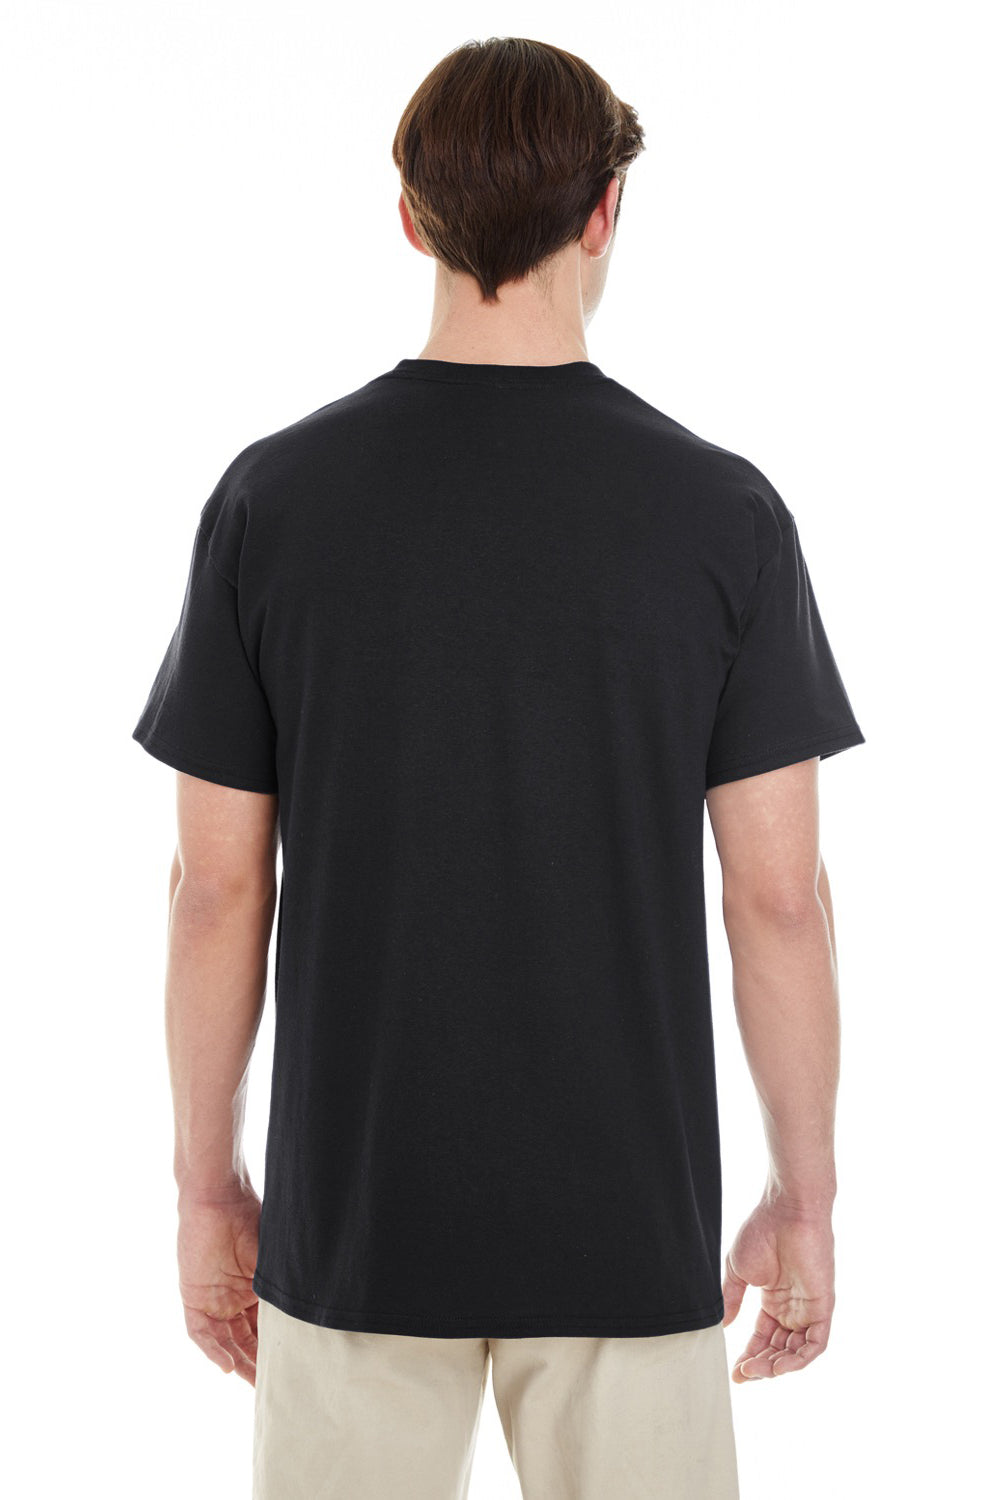 Download Gildan 5300 G530 Mens Black Short Sleeve Crewneck T Shirt W Pocket Bigtopshirtshop Com